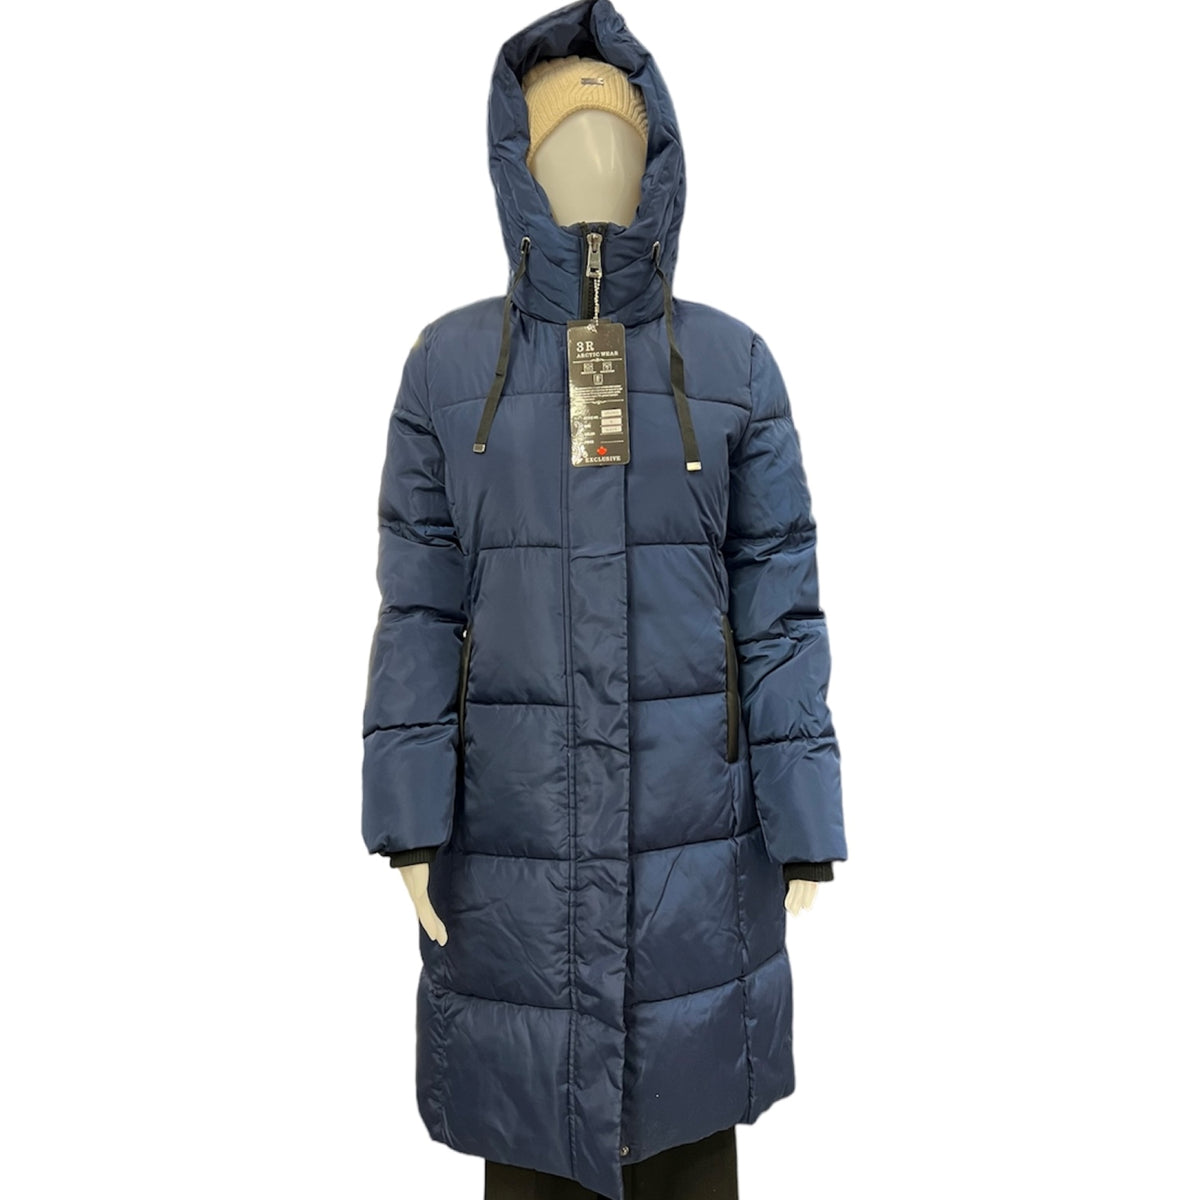 Ayez le style avec ce manteau d'hiver 3R Arctic Wear bleu long jusqu'au genoux. Un manteau super doux et chaud, qui vous accompagnera quelle que soit la température. Profitez du confort et du style tout au long de l'hiver.